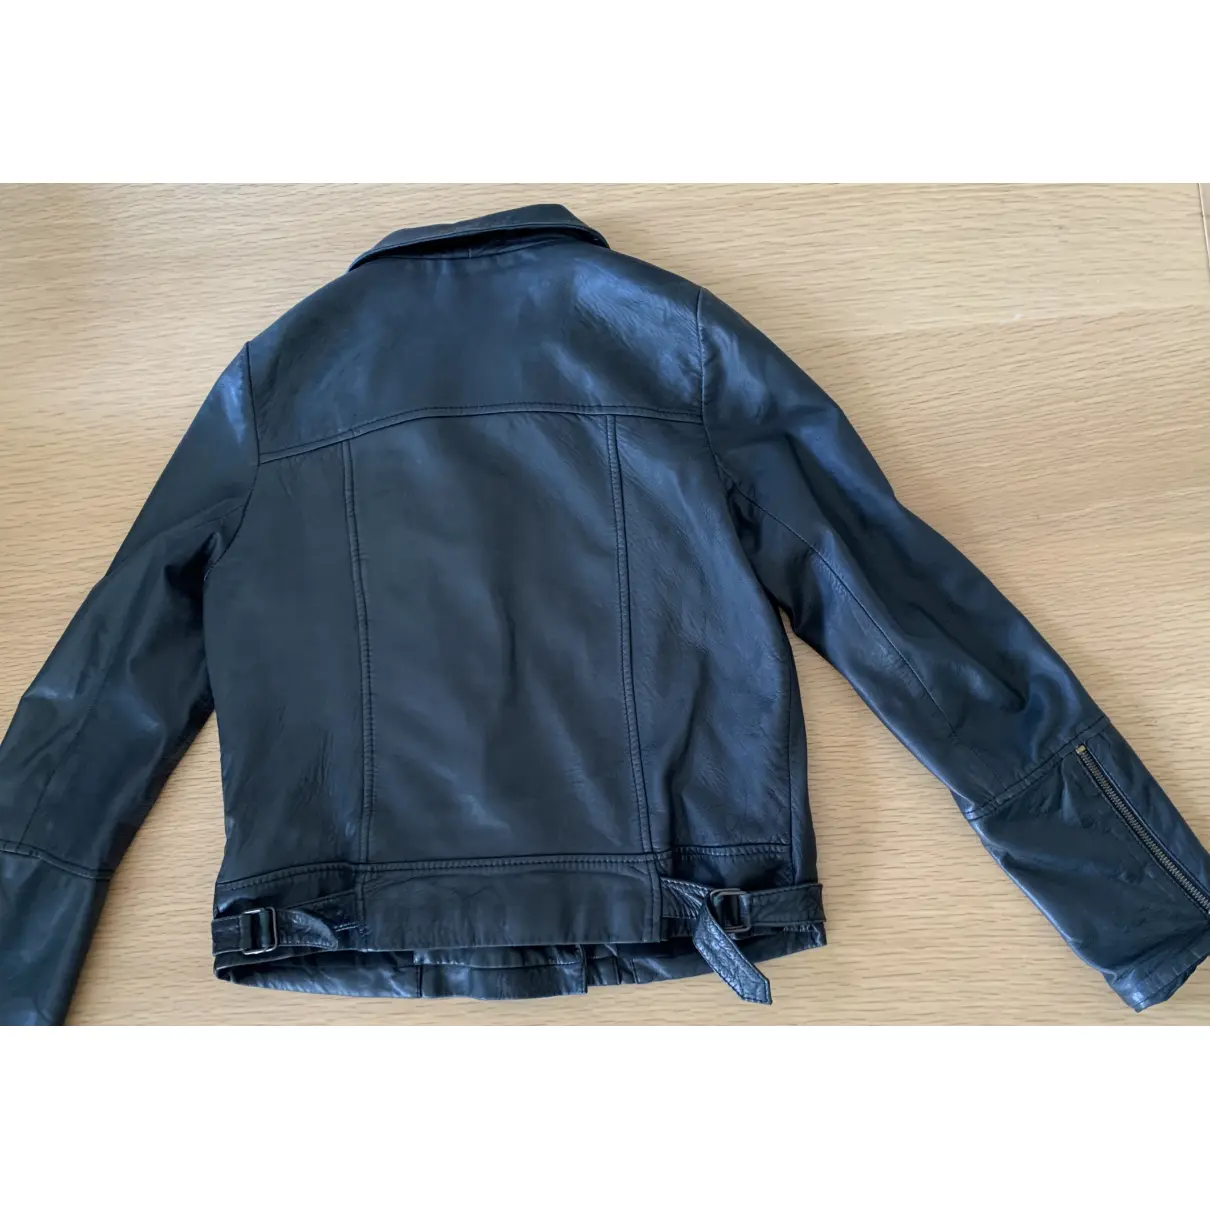 Buy KOOKAI Leather jacket online - Vintage